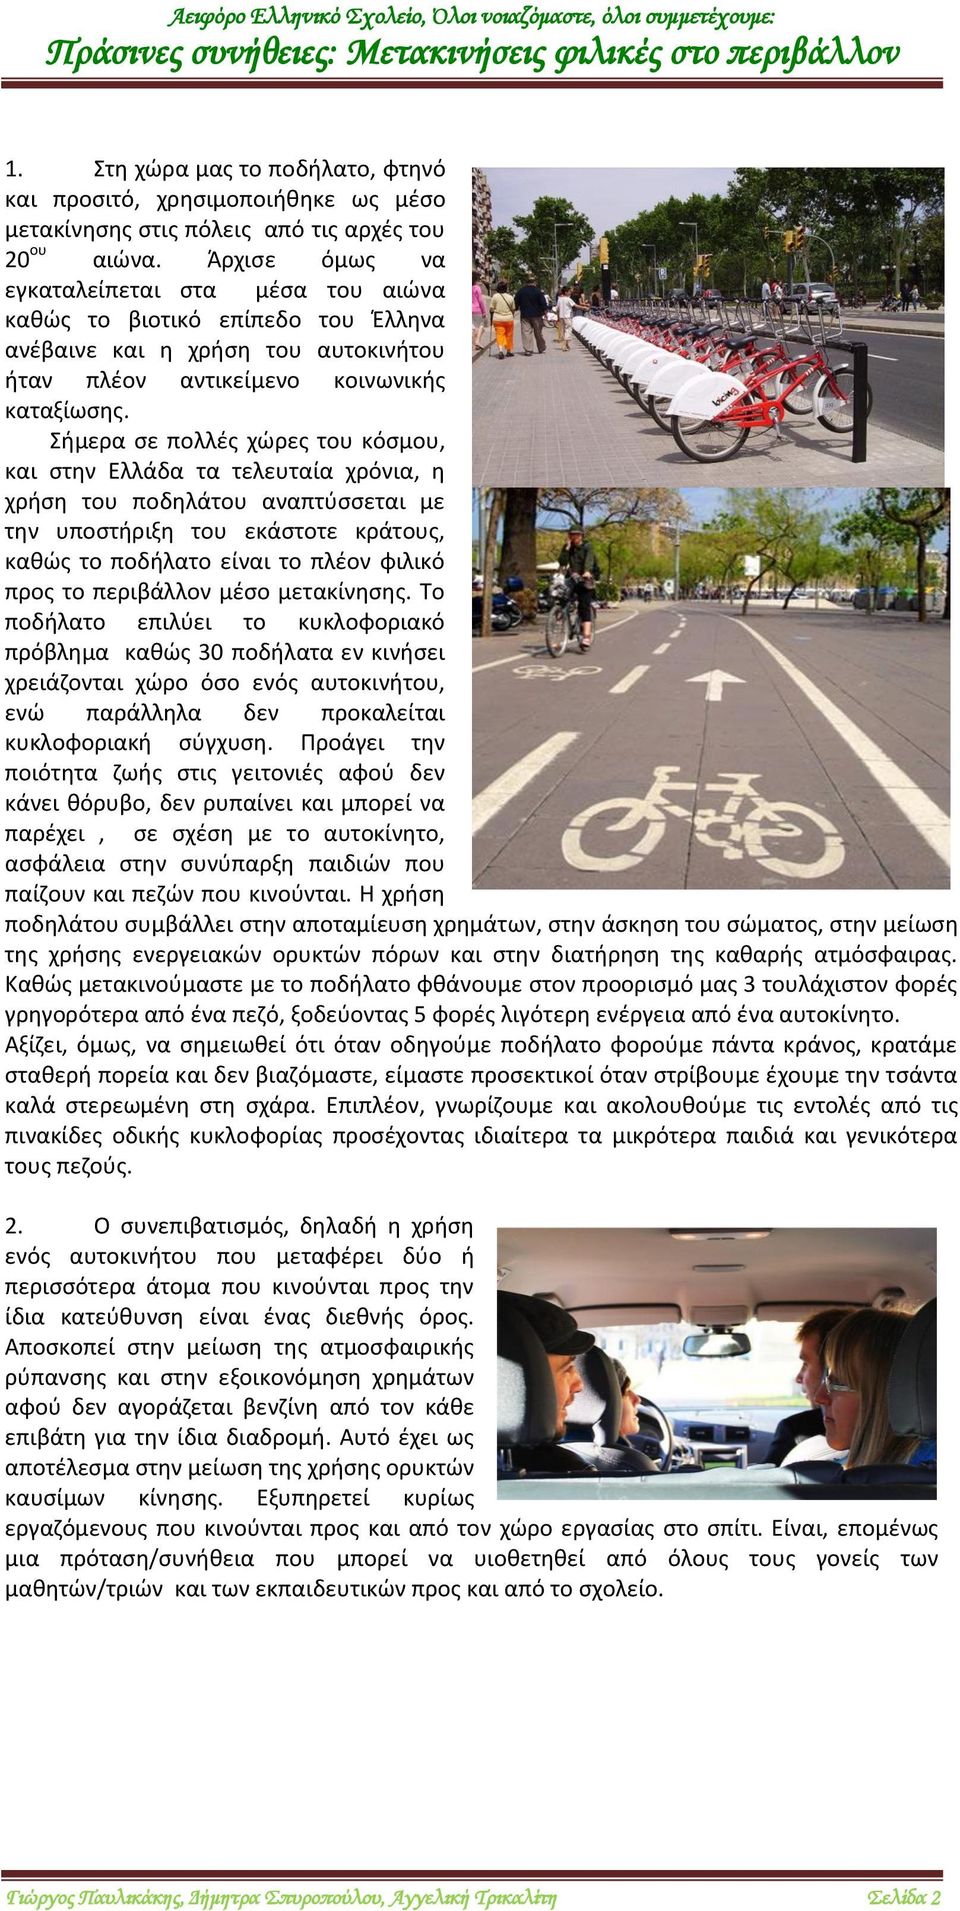 Σήμερα σε πολλές χώρες του κόσμου, και στην Ελλάδα τα τελευταία χρόνια, η χρήση του ποδηλάτου αναπτύσσεται με την υποστήριξη του εκάστοτε κράτους, καθώς το ποδήλατο είναι το πλέον φιλικό προς το